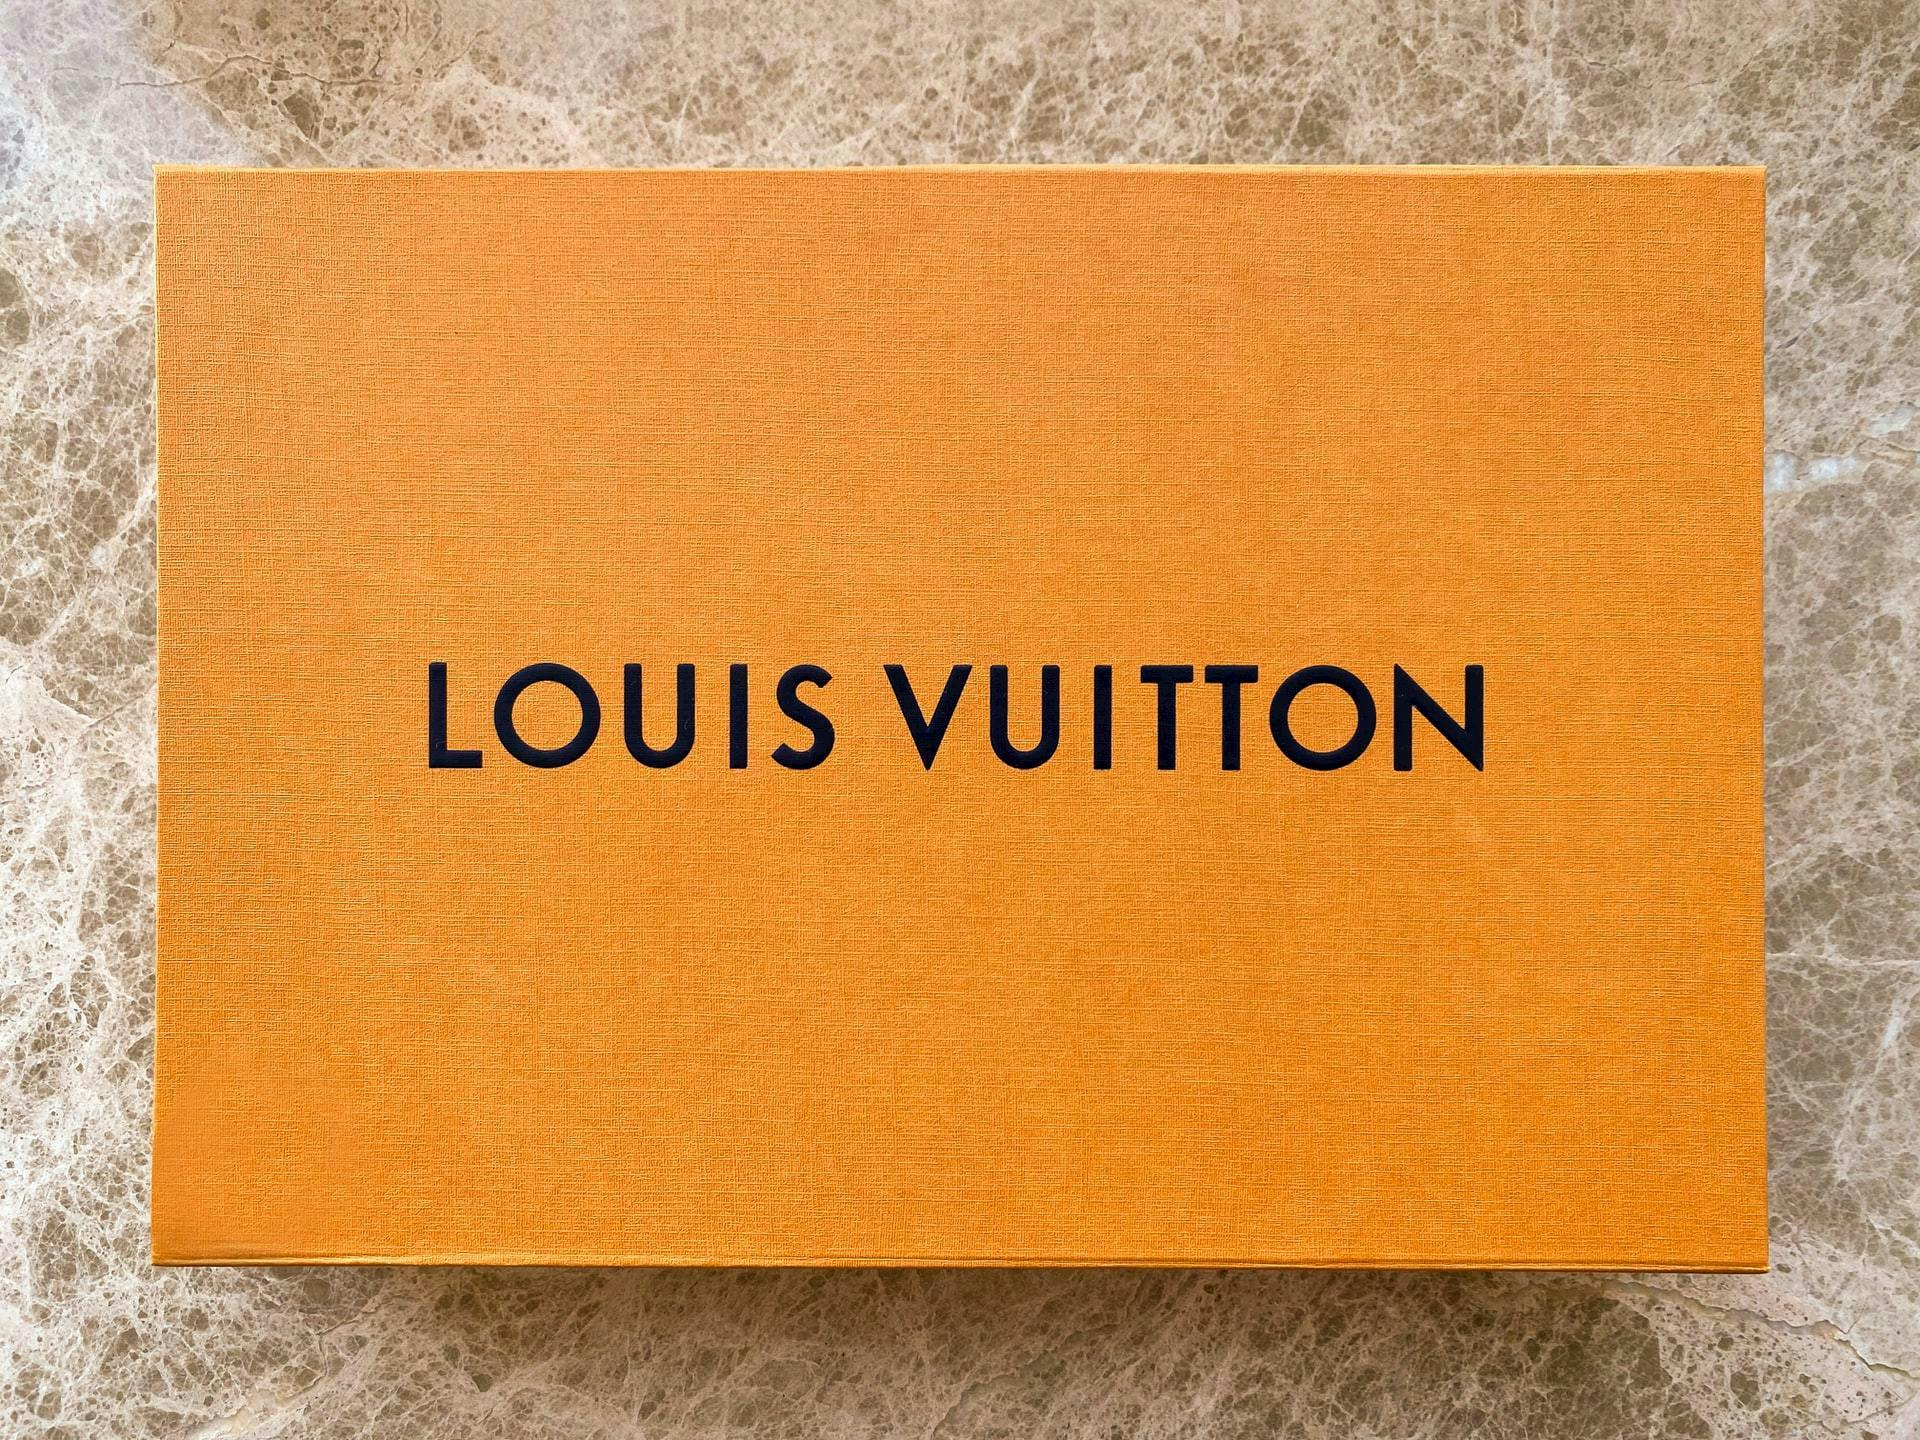 Uma caixa com a marca da Louis Vuitton. Um belo exemplo de nome para empresas.